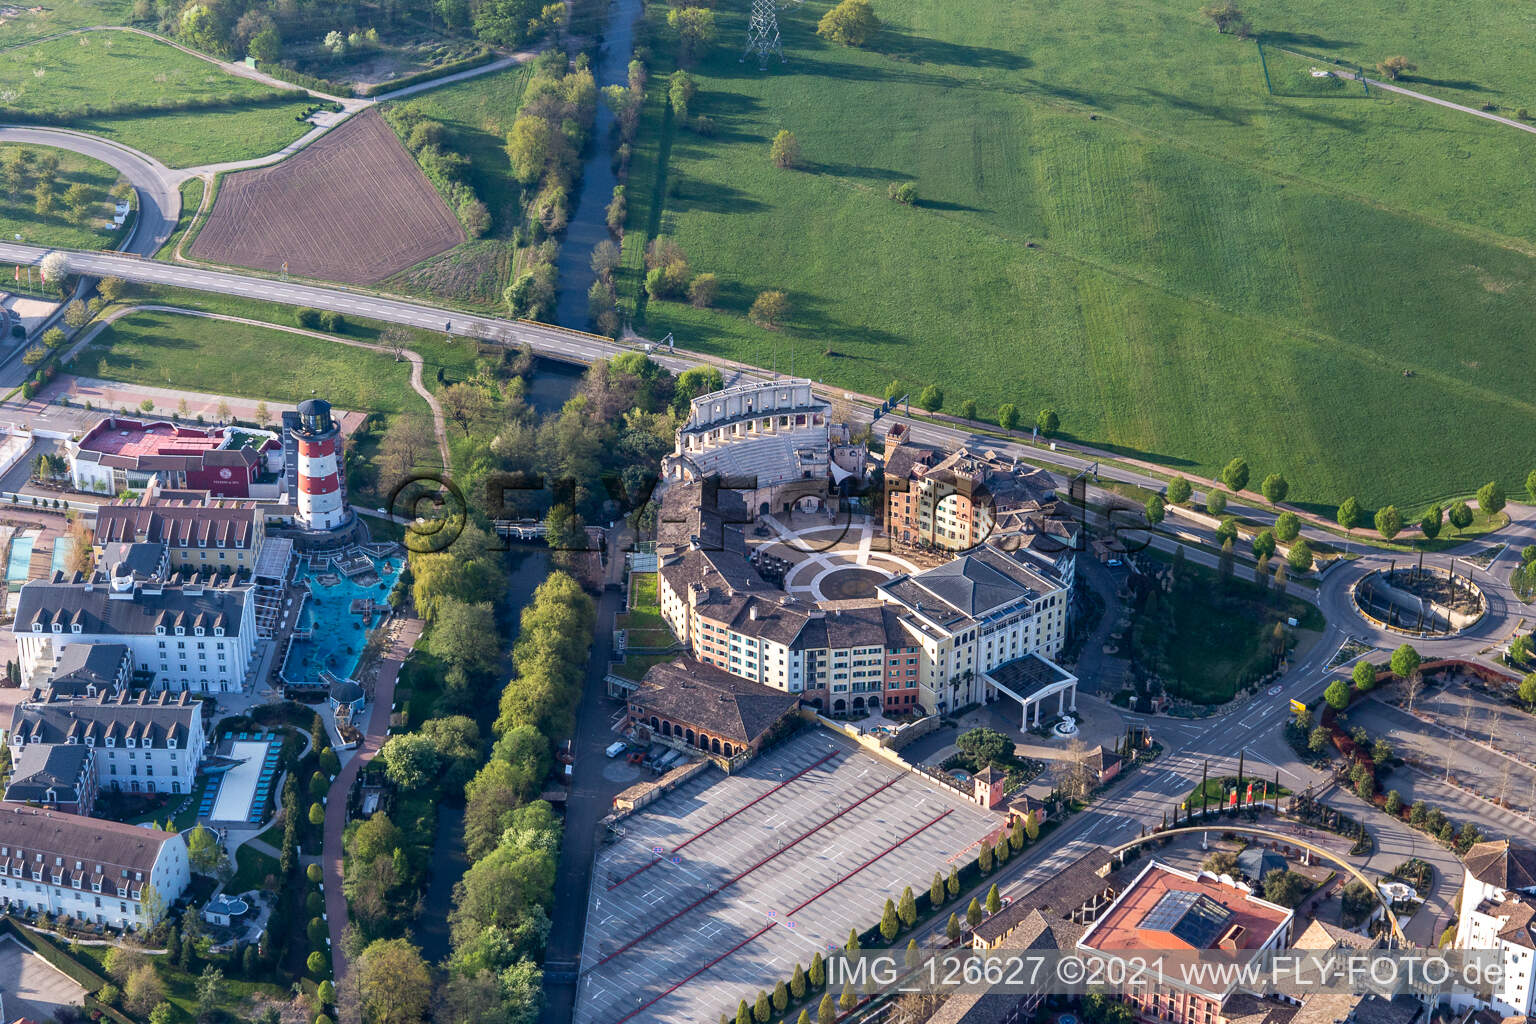 Luftbild von Wegen Corona-Lockdown geschlossenes 4 Sterne Erlebnishotel "Colosseo" im Freizeitpark Europa-Park in Rust im Bundesland Baden-Württemberg, Deutschland